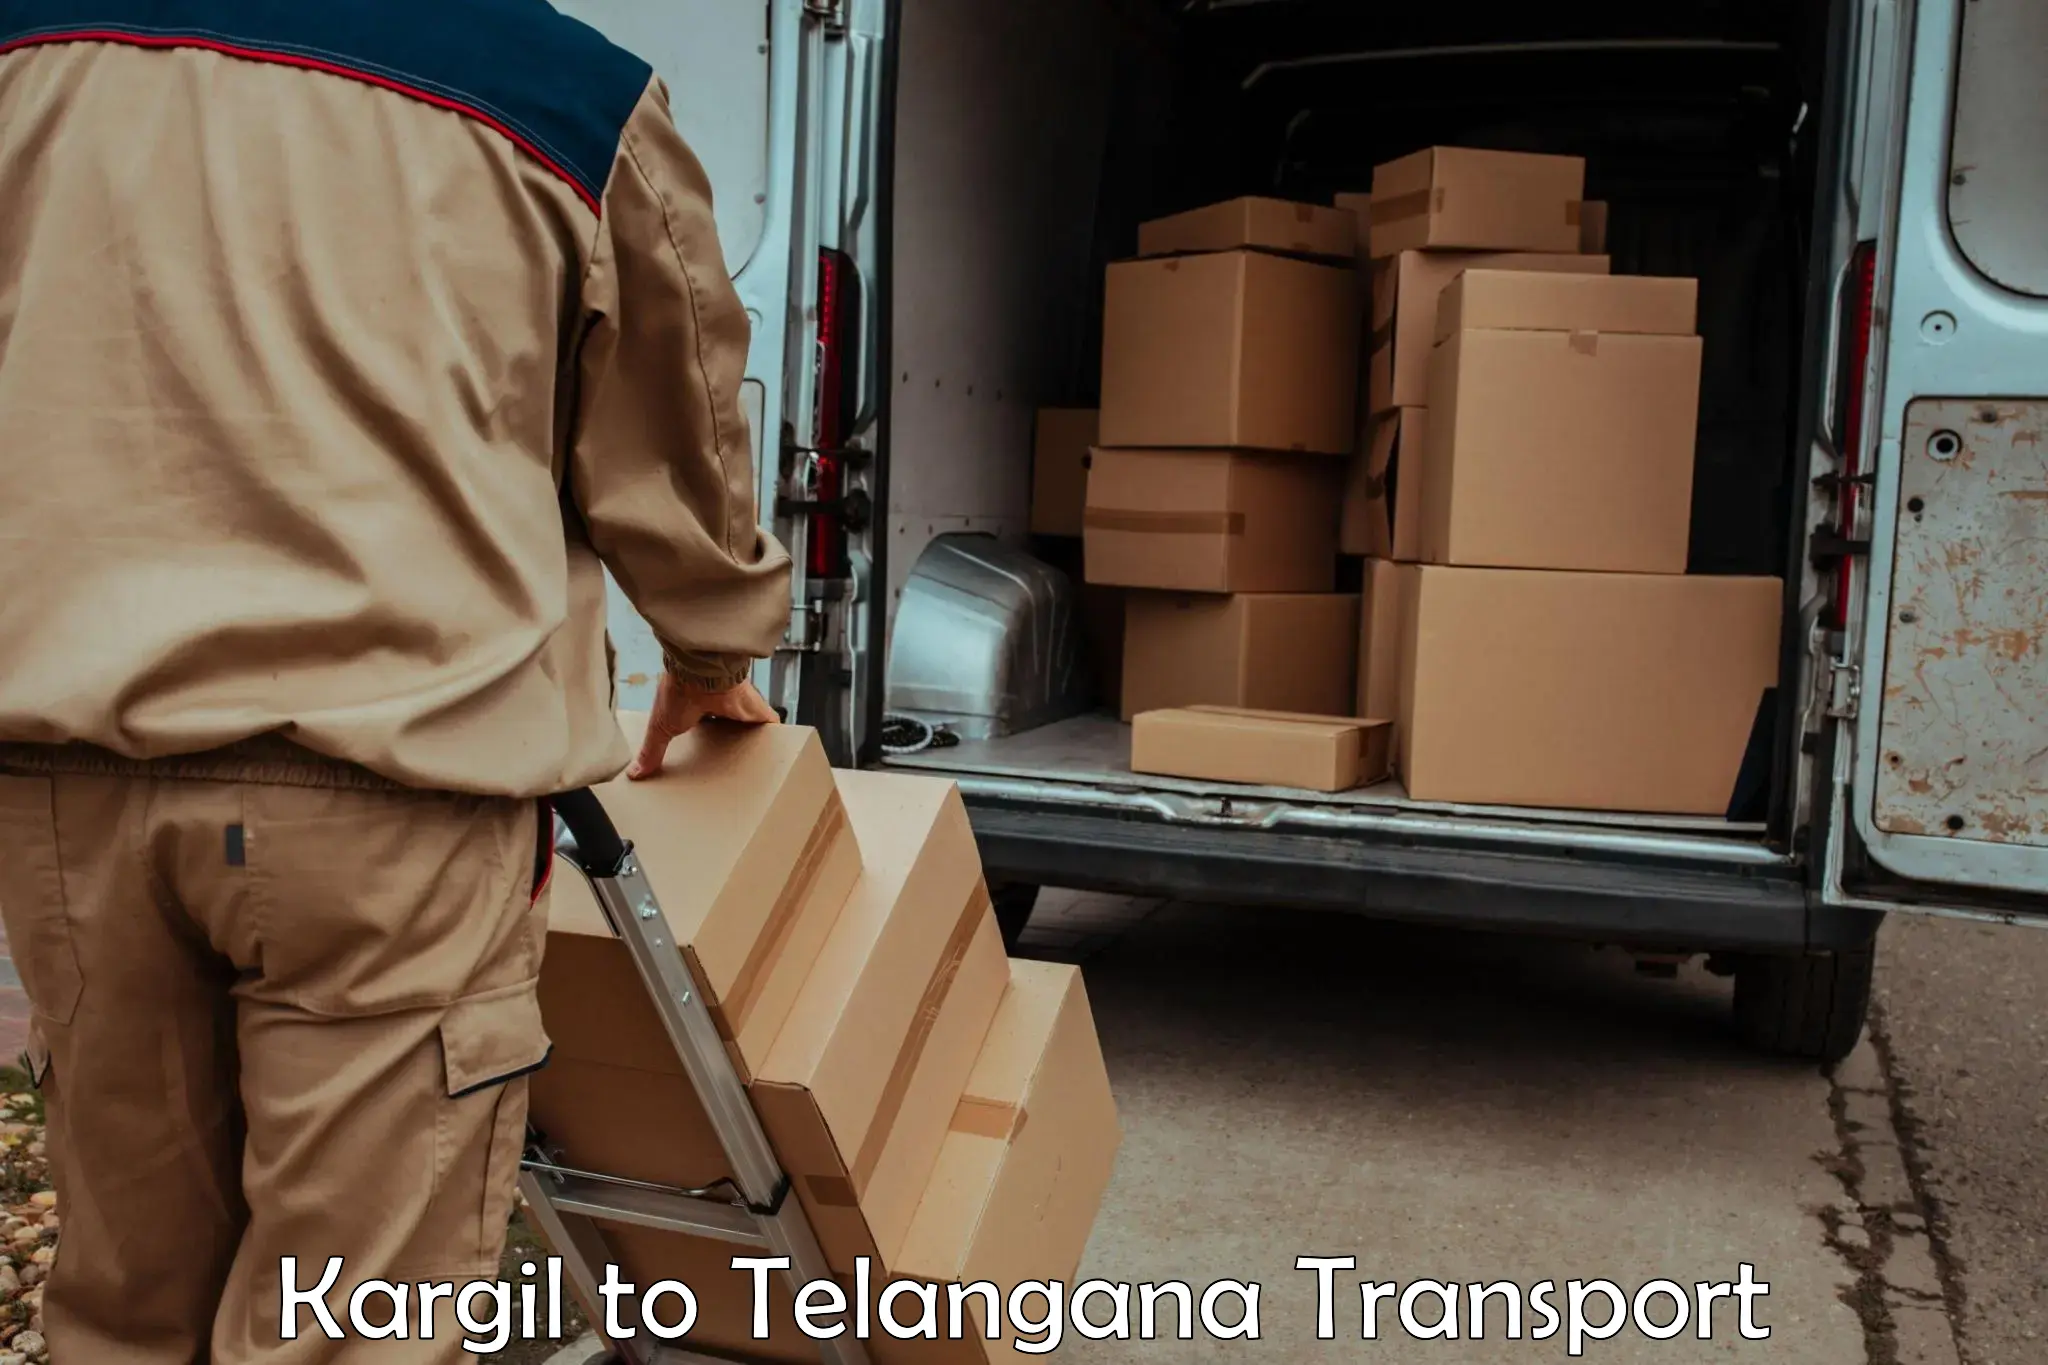 Vehicle transport services Kargil to Telangana